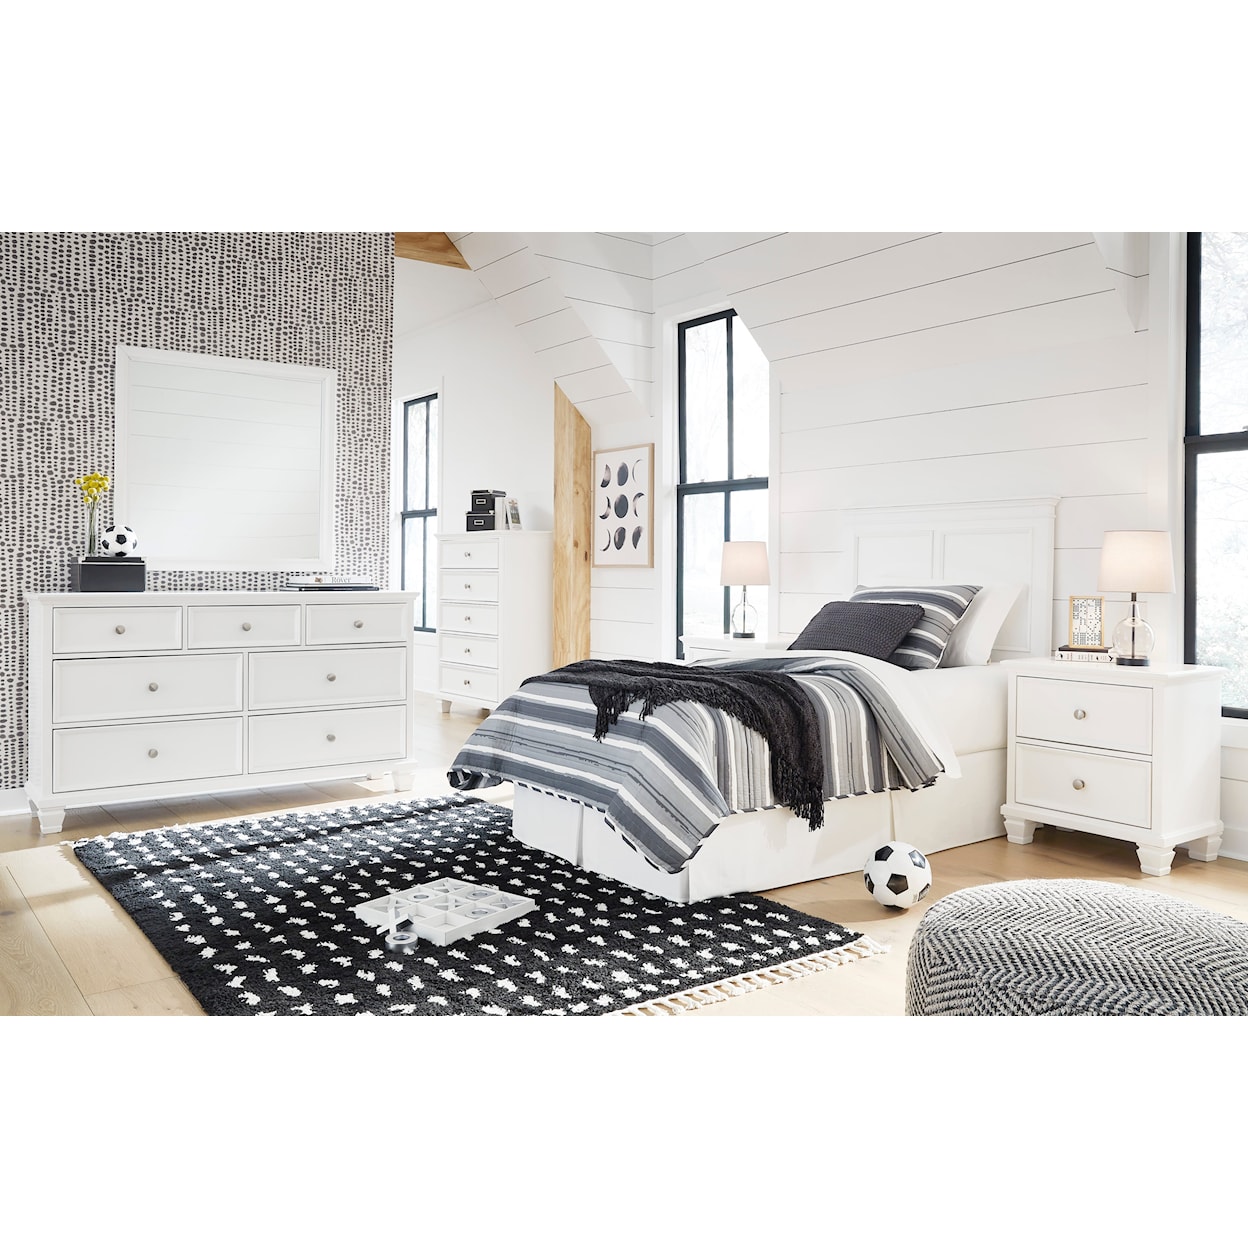 Belfort Select Park Twin Bedroom Set